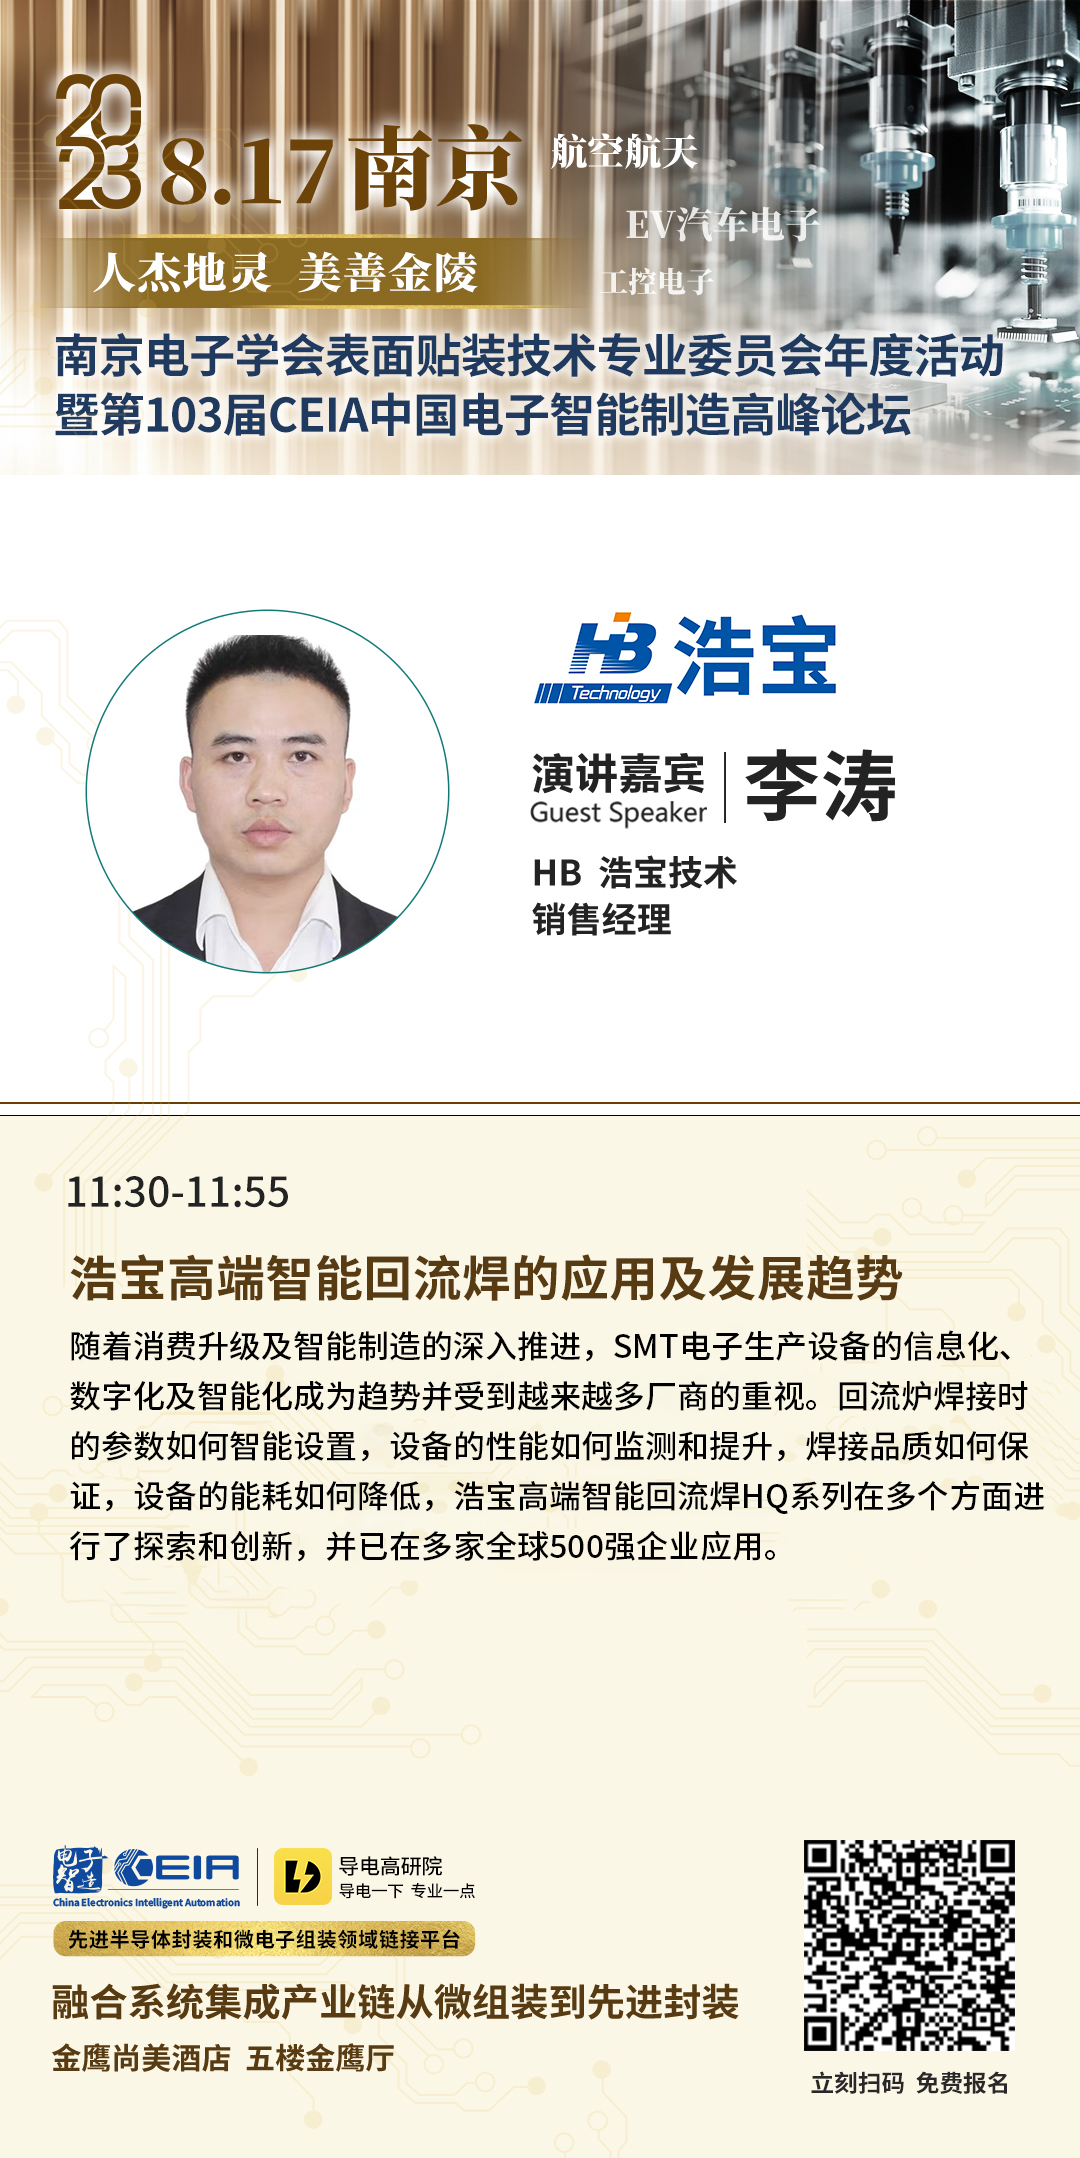 浩宝华东区销售经理李涛先生分享《高端智能回流焊的应用及发展趋势》